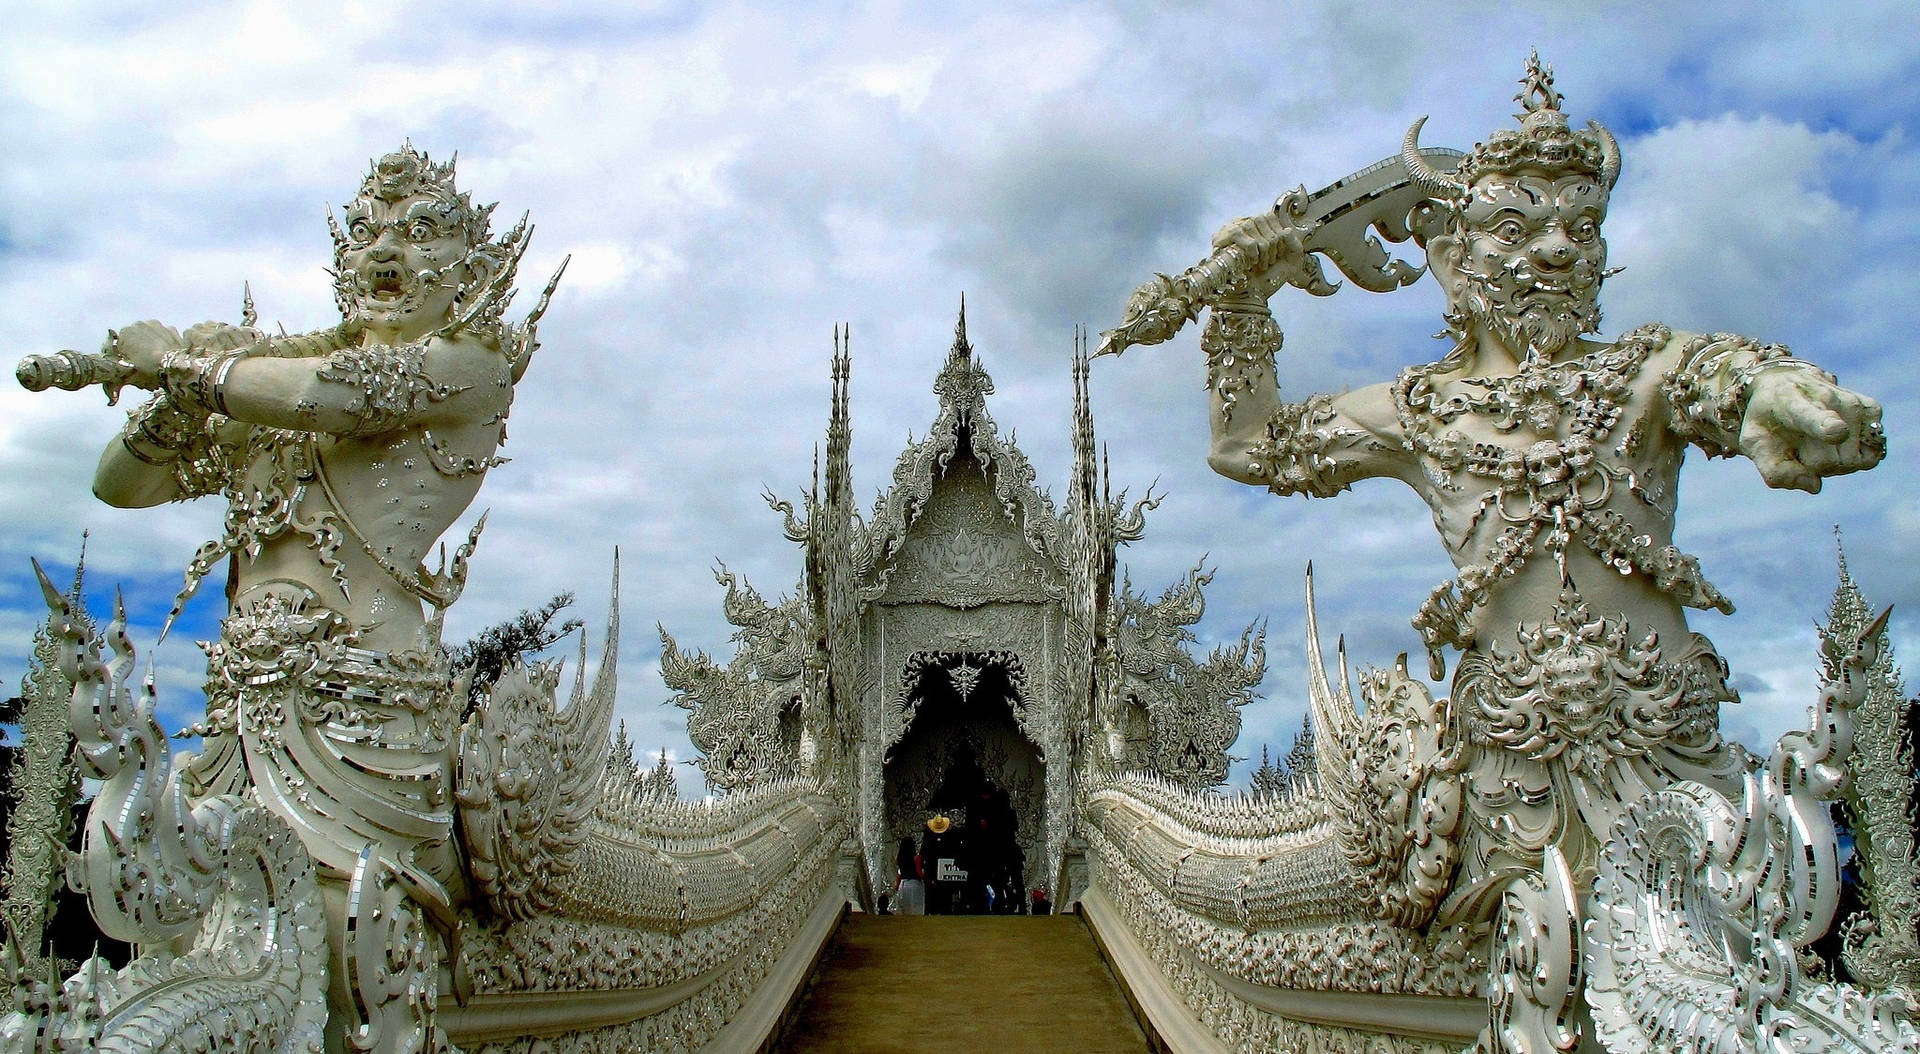 Giới thiệu đến tất cả mọi người về Wat Rong Khun - ngôi đền Thái Lan nổi tiếng với kiến trúc tuyệt đẹp. Cùng khám phá tòa lâu đài trắng tinh khiết này, được thiết kế với một sự pha trộn hài hòa của nghệ thuật và văn hóa Thái Lan truyền thống.